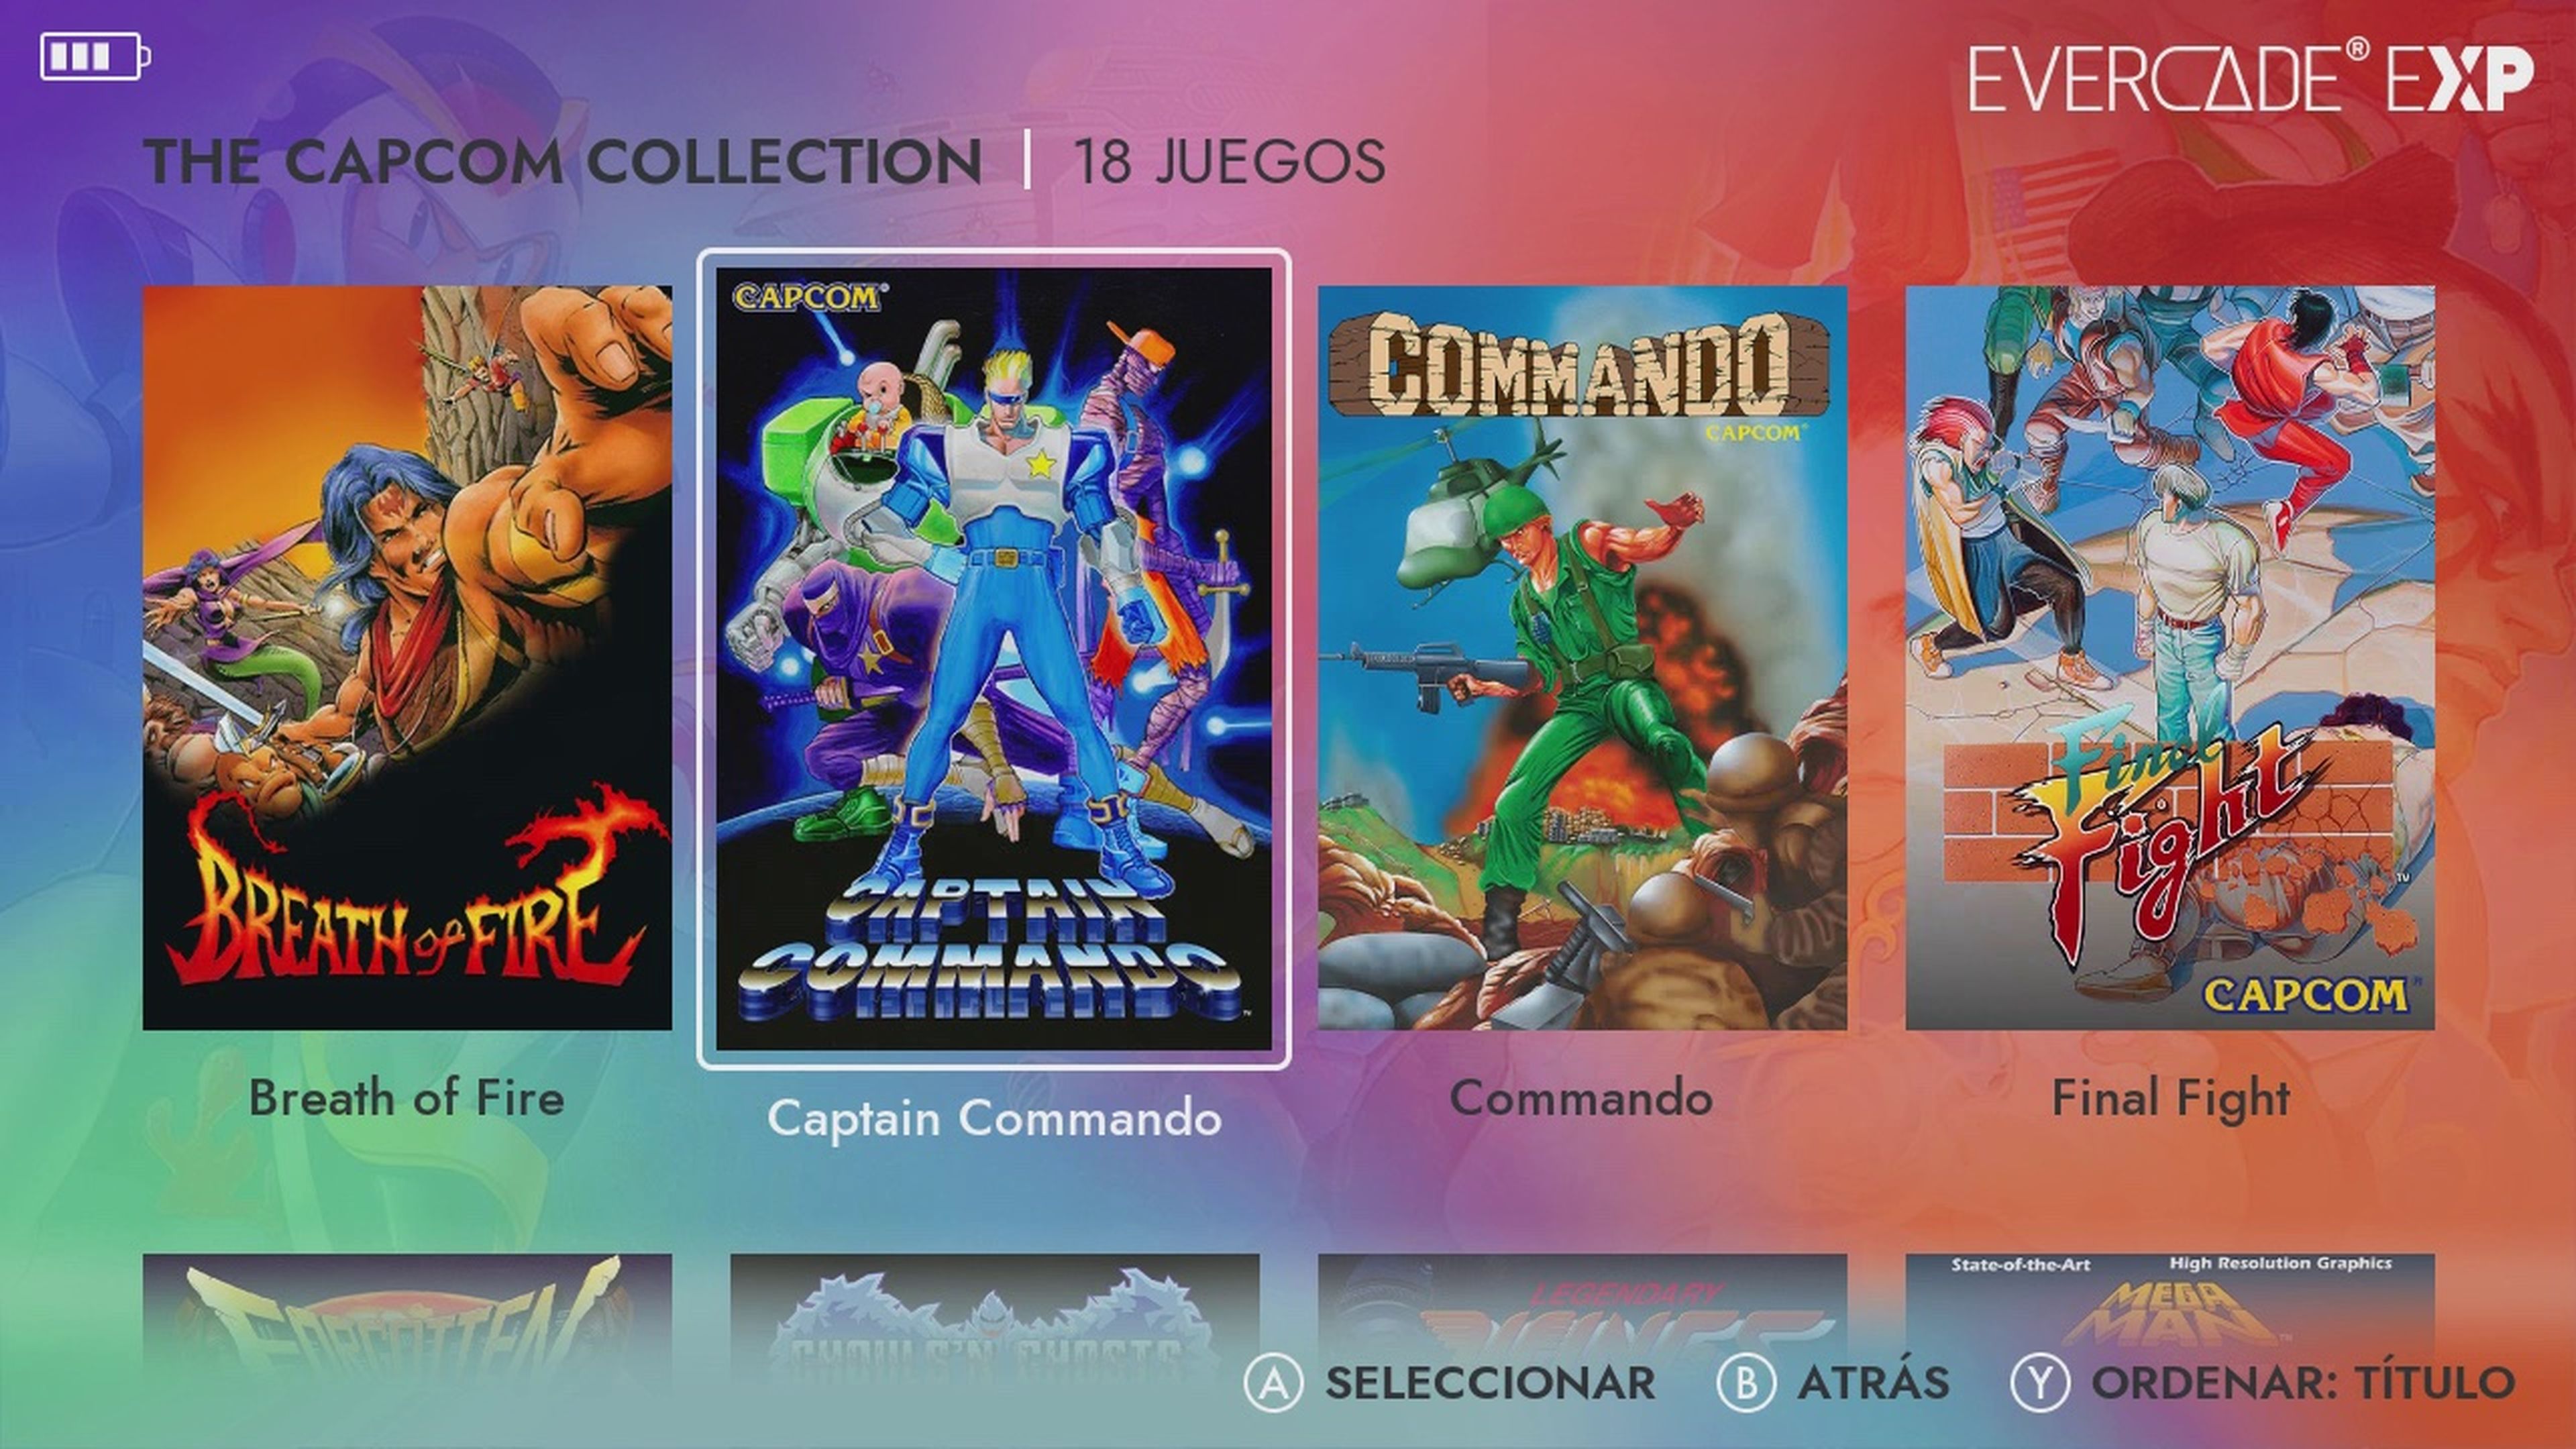 Evercade EXP Capcom Collection